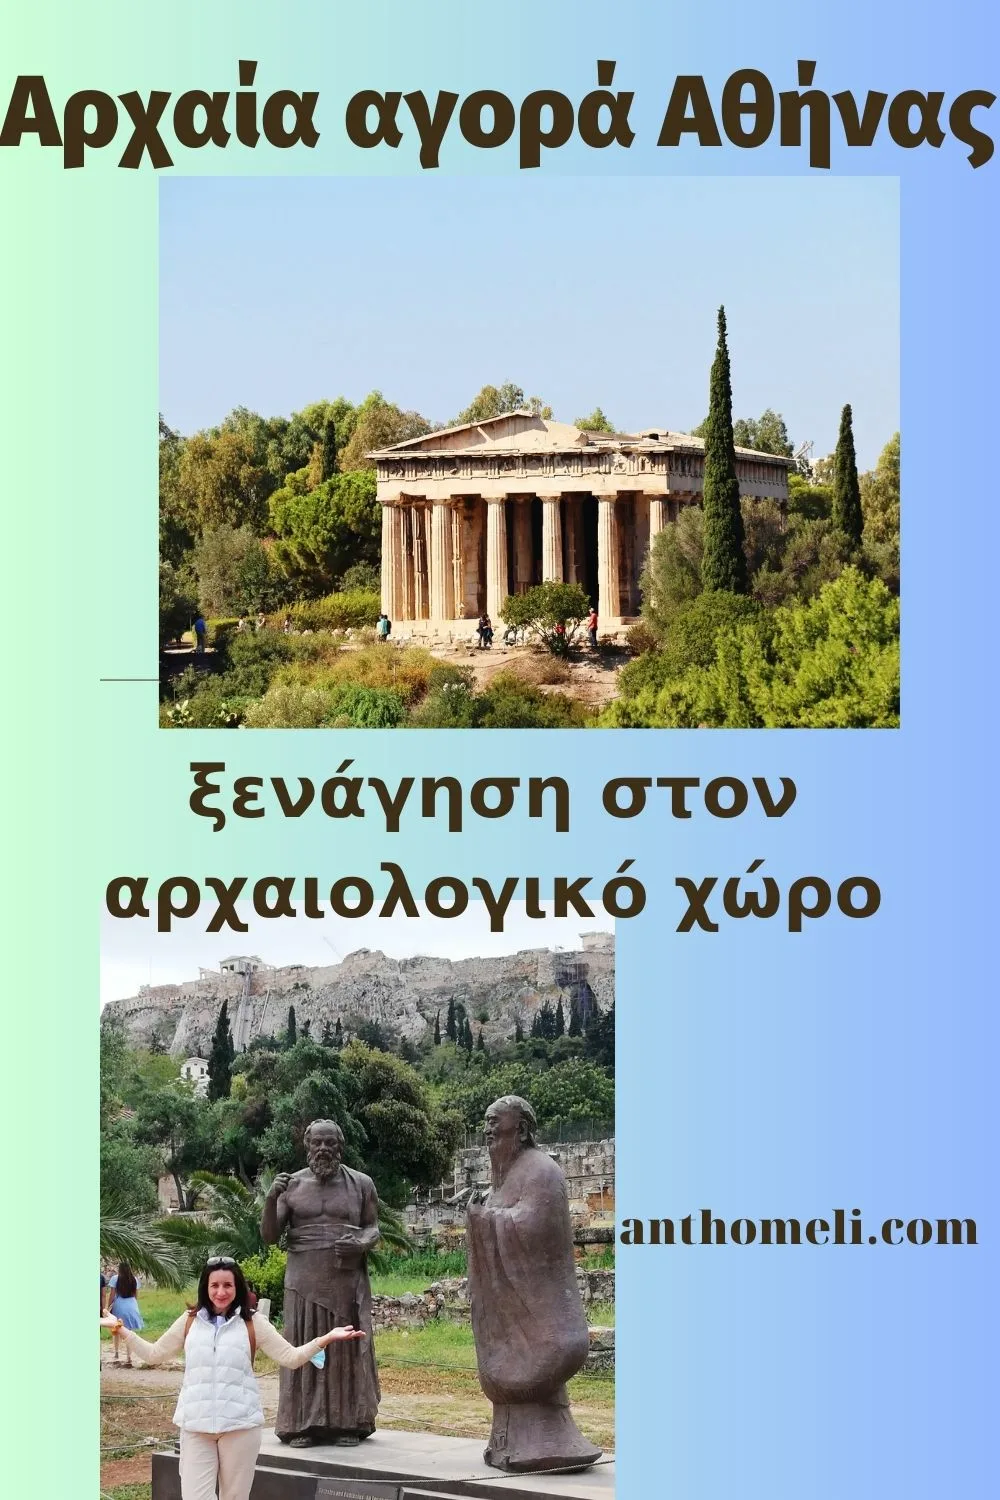 Η αρχαία Αγορά της Αθήνας είναι ένας αρχαιολογικός χώρος. Αξιοθέατα είναι ο Ναός του Ηφαίστου (Θησείο) και η Στοά Αττάλου και το Μουσείο.